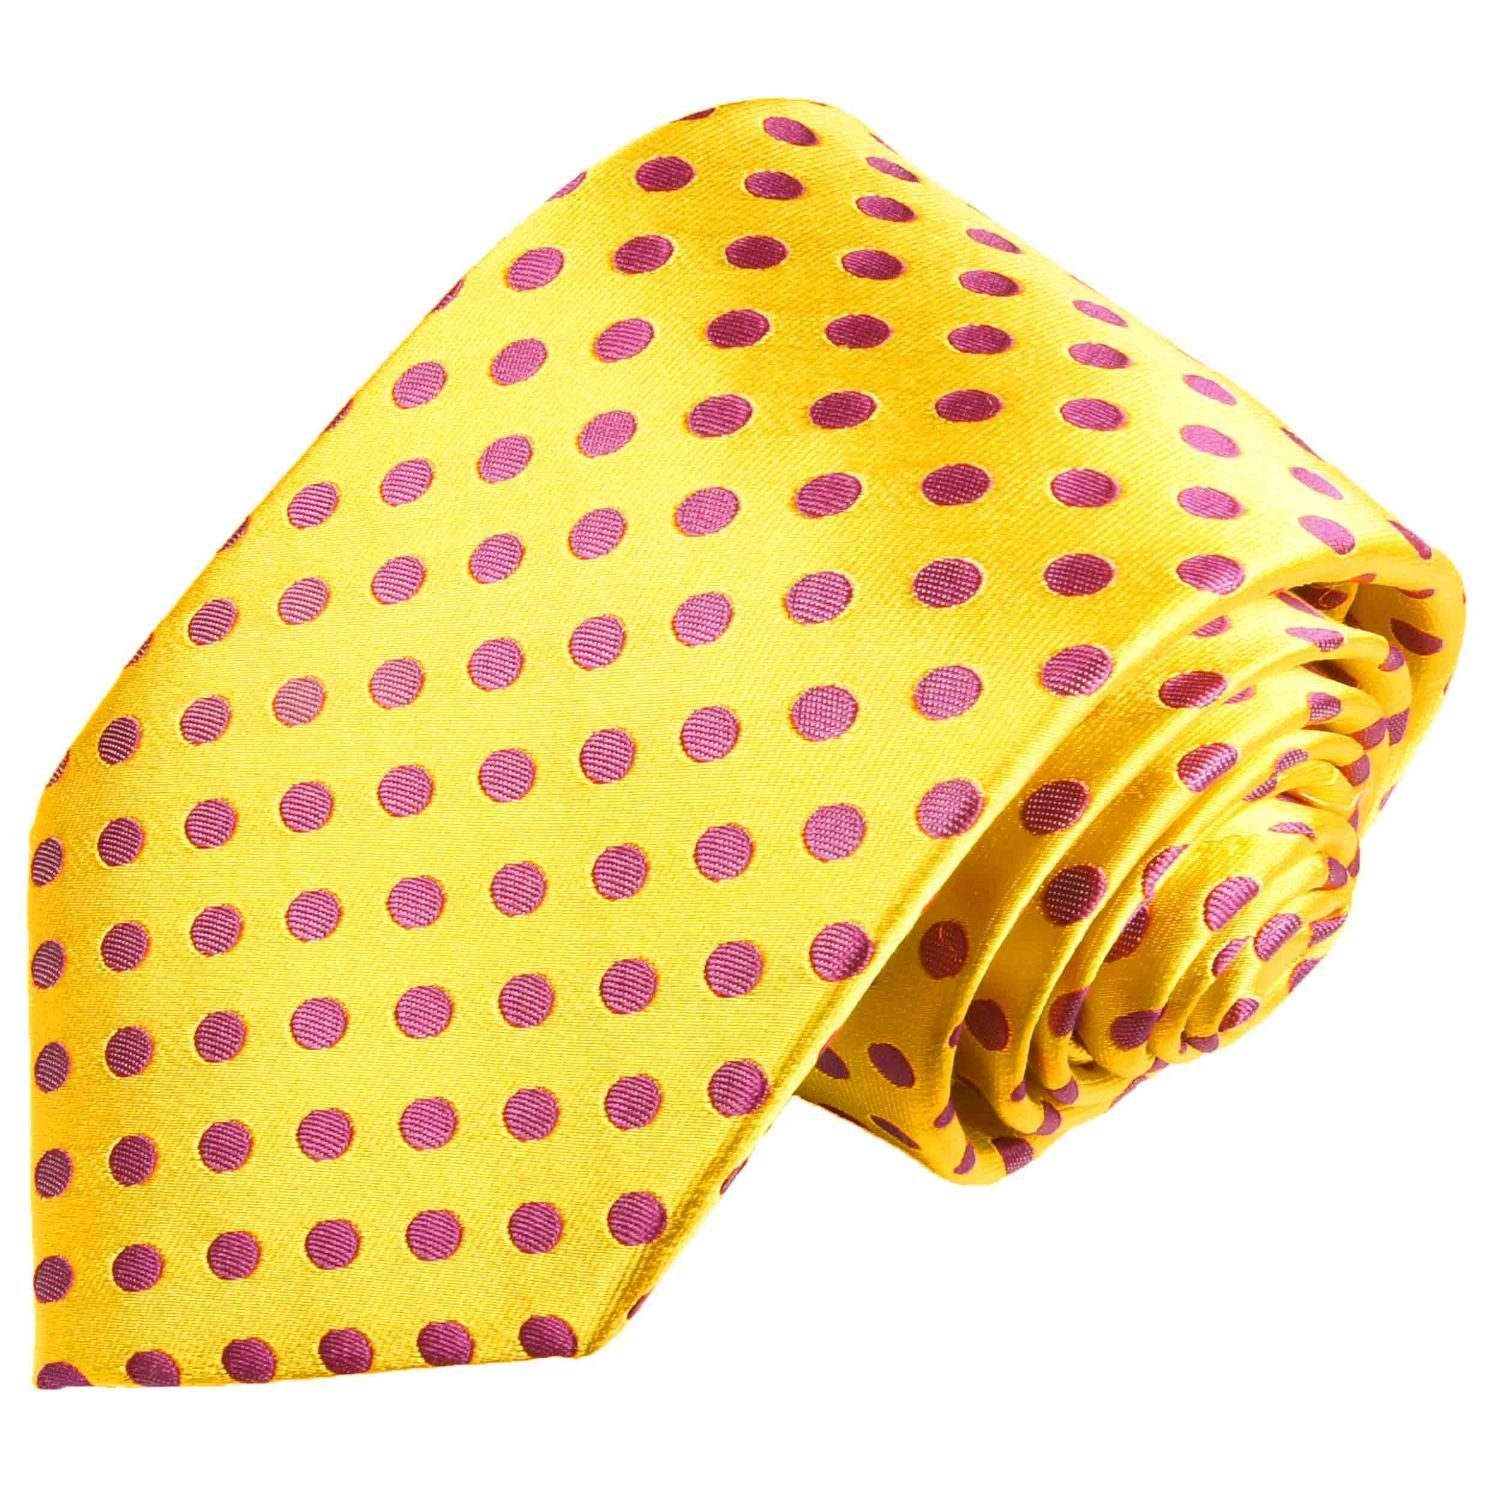 Paul Malone Krawatte Designer Seidenkrawatte Herren Schlips modern gepunktet 100% Seide Schmal (6cm), gelb pink 2003